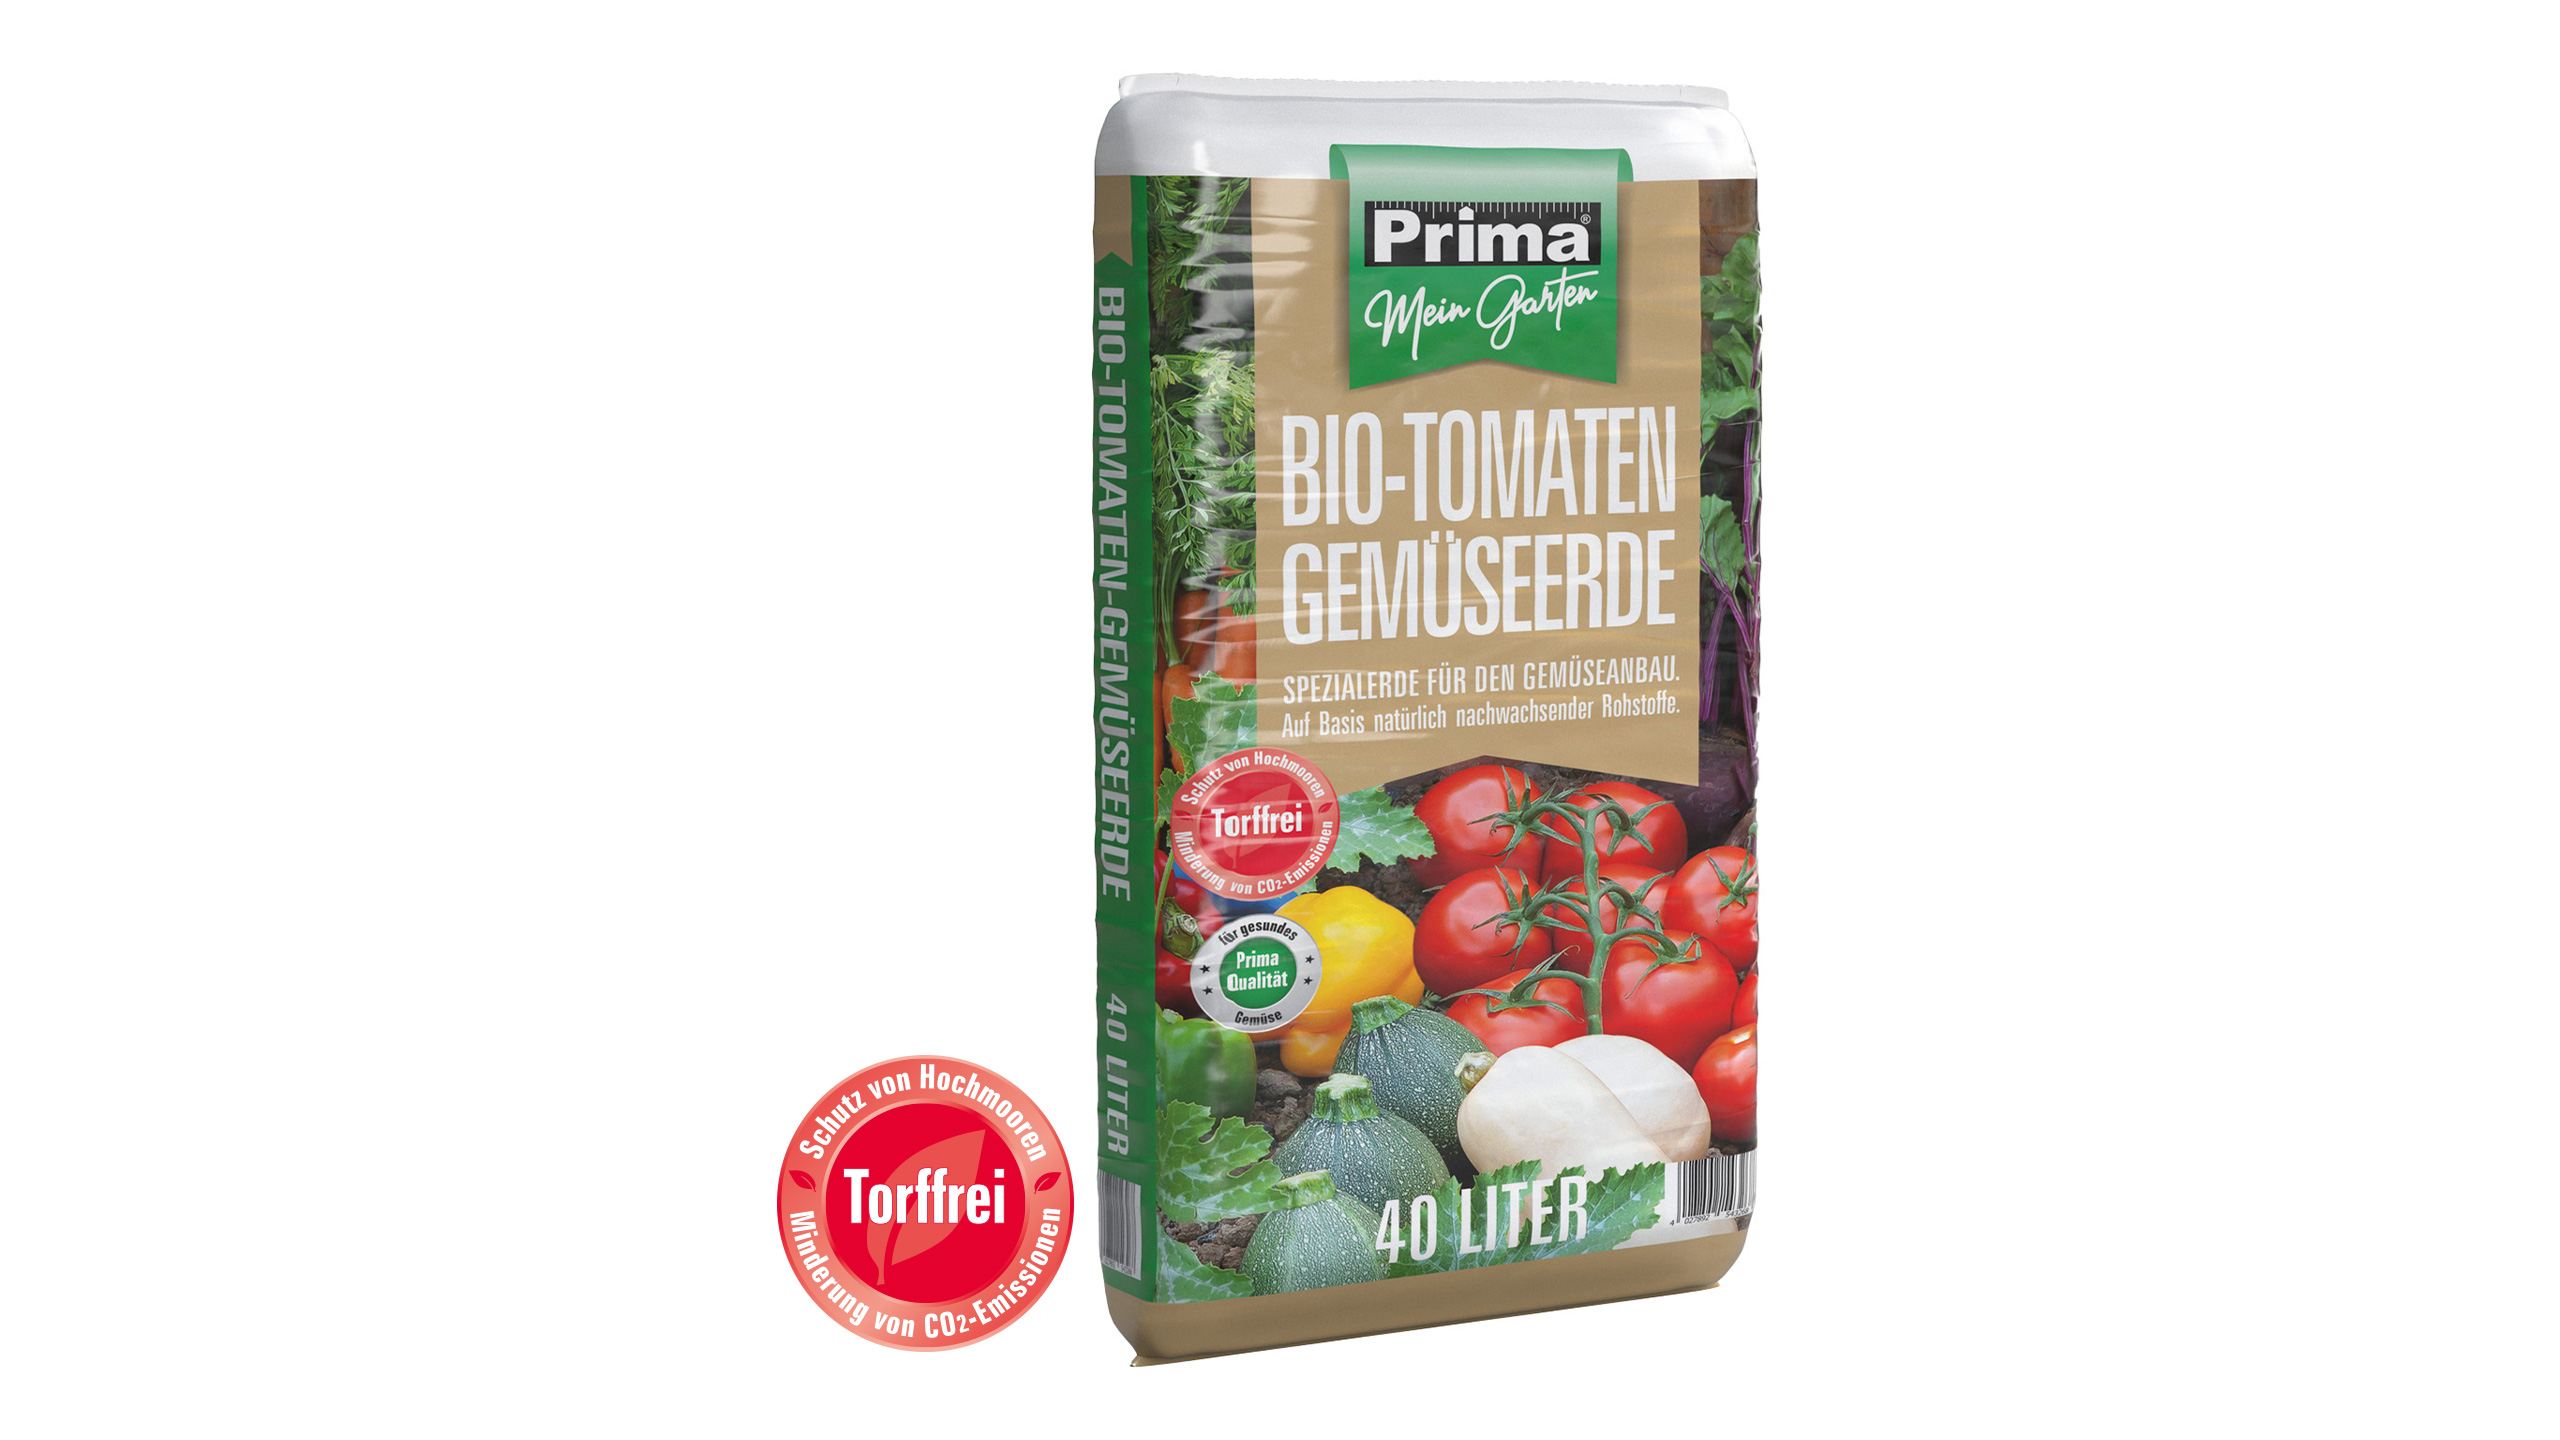 GREGOR ZIEGLER GMBH Prima BIO Tomaten- und Gemüseerde 40l torffrei, Basis nachw. hochwer. Rohstoff